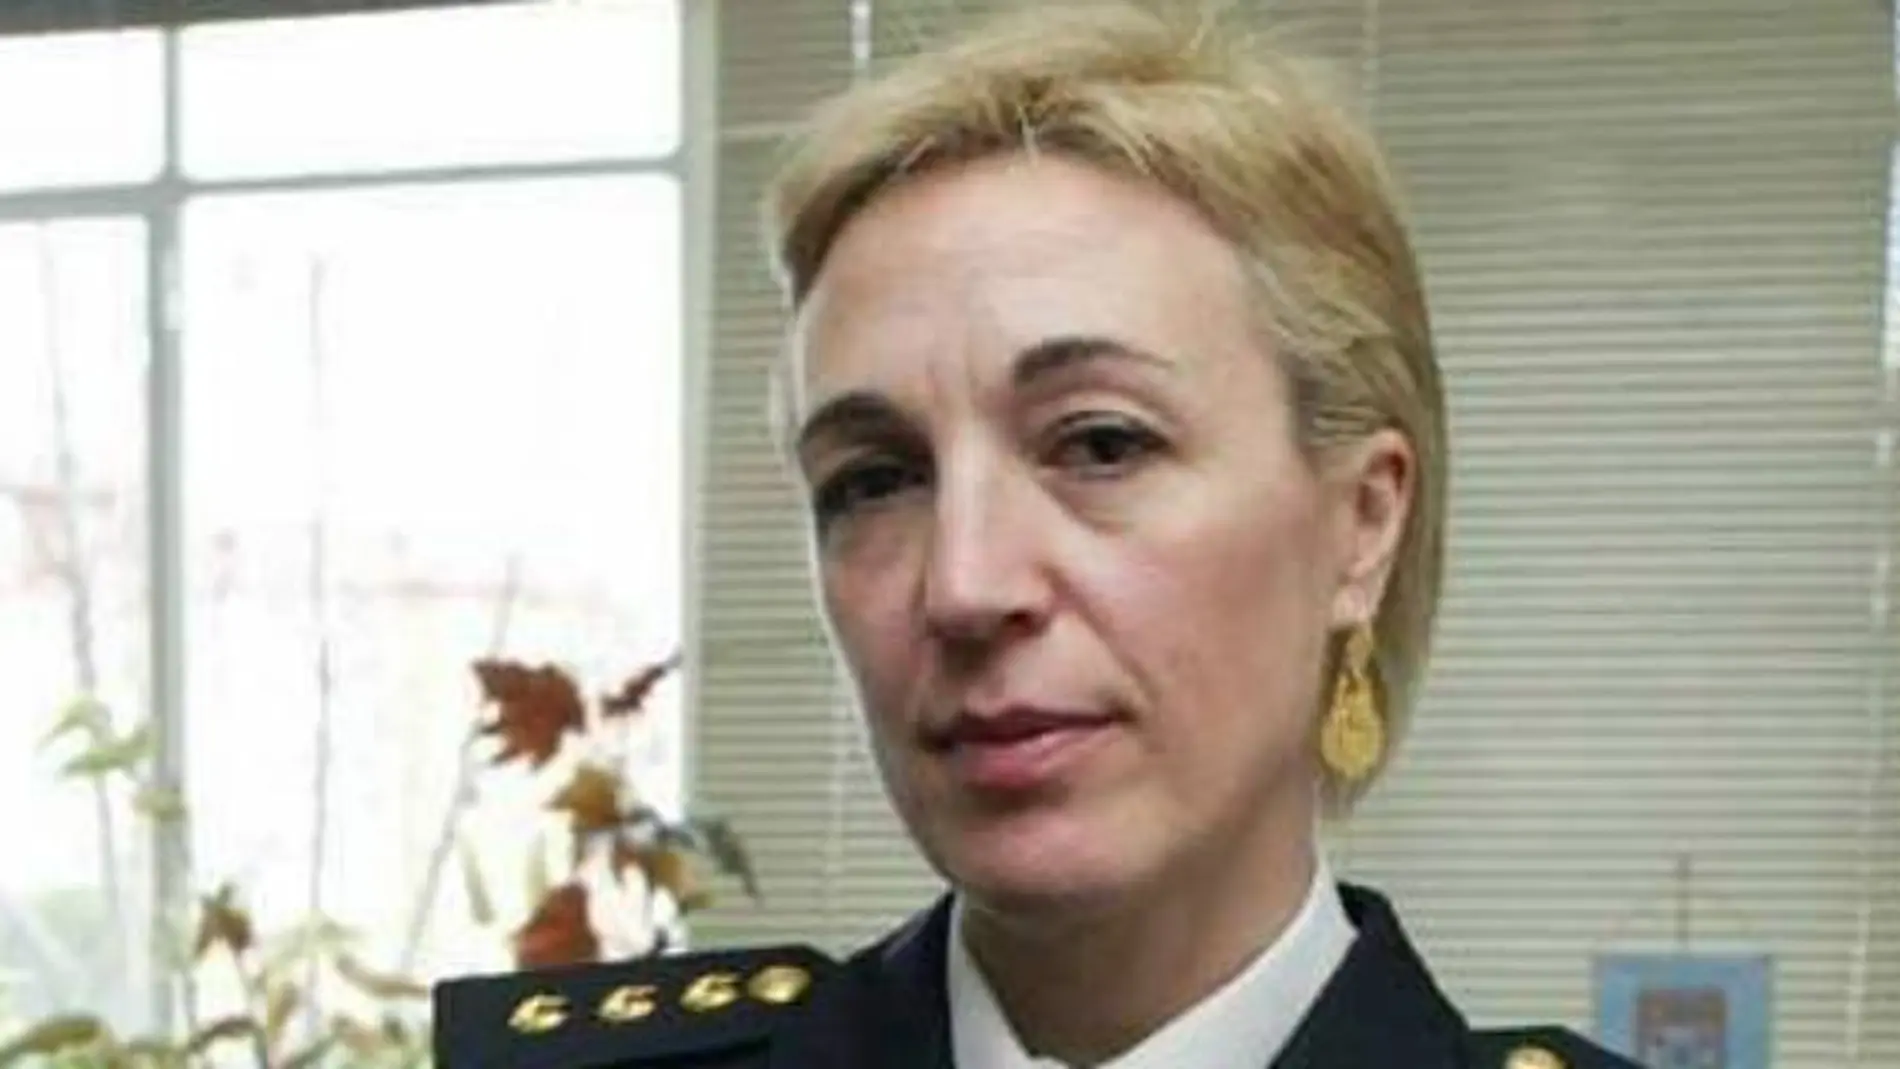 La comisaria principal María Marcos llegó al departamento de Seguridad de Moncloa en septiembre de 2018